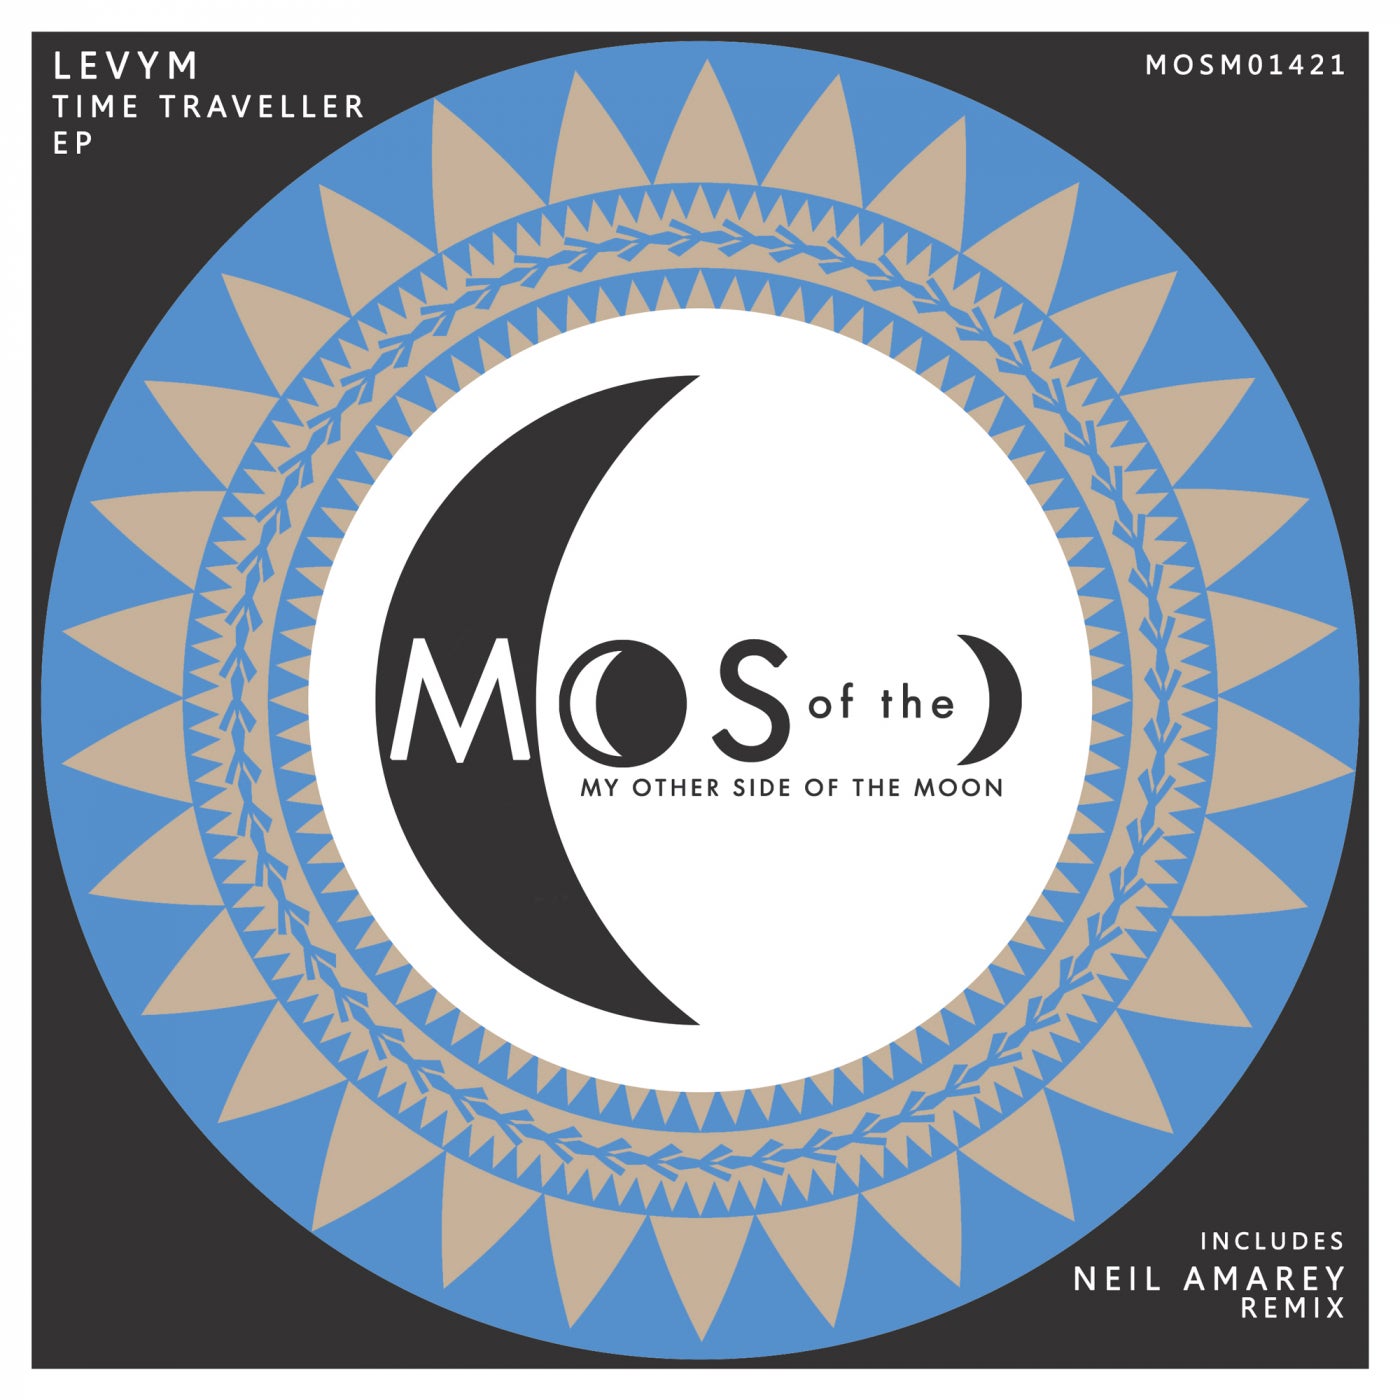 LevyM - Time Traveller EP [MOSM01421]